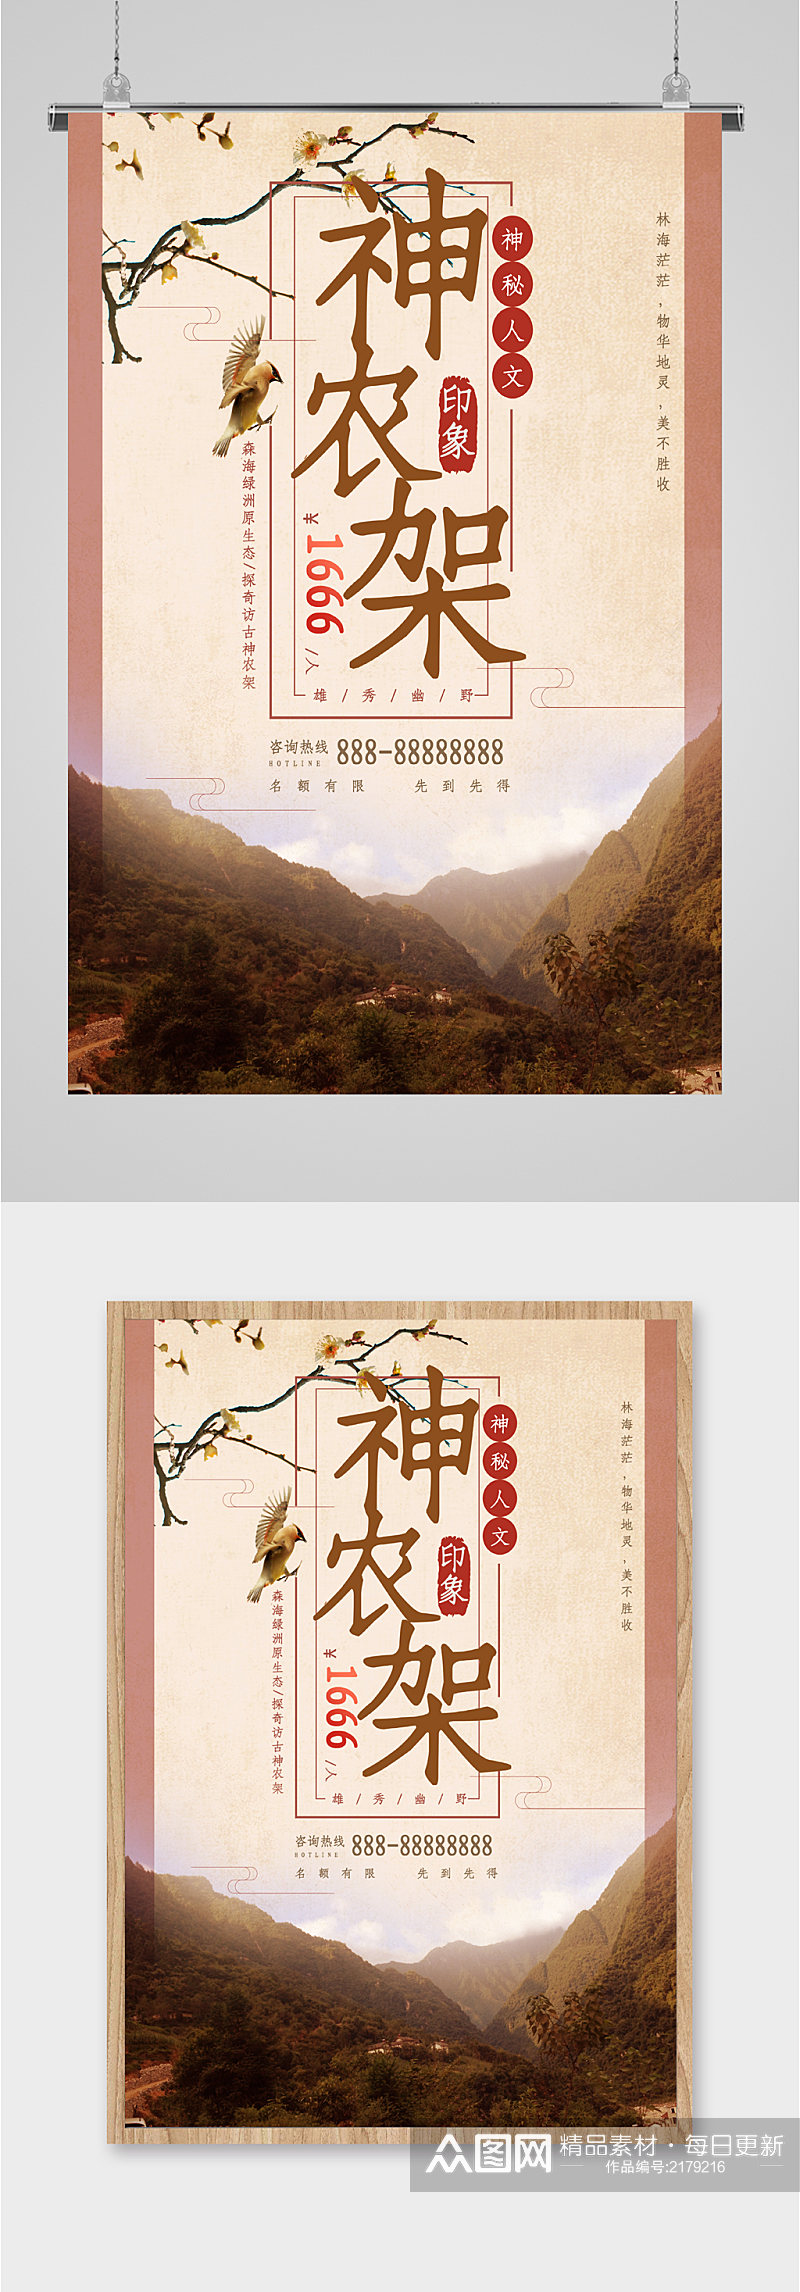 神农架风景旅游海报素材